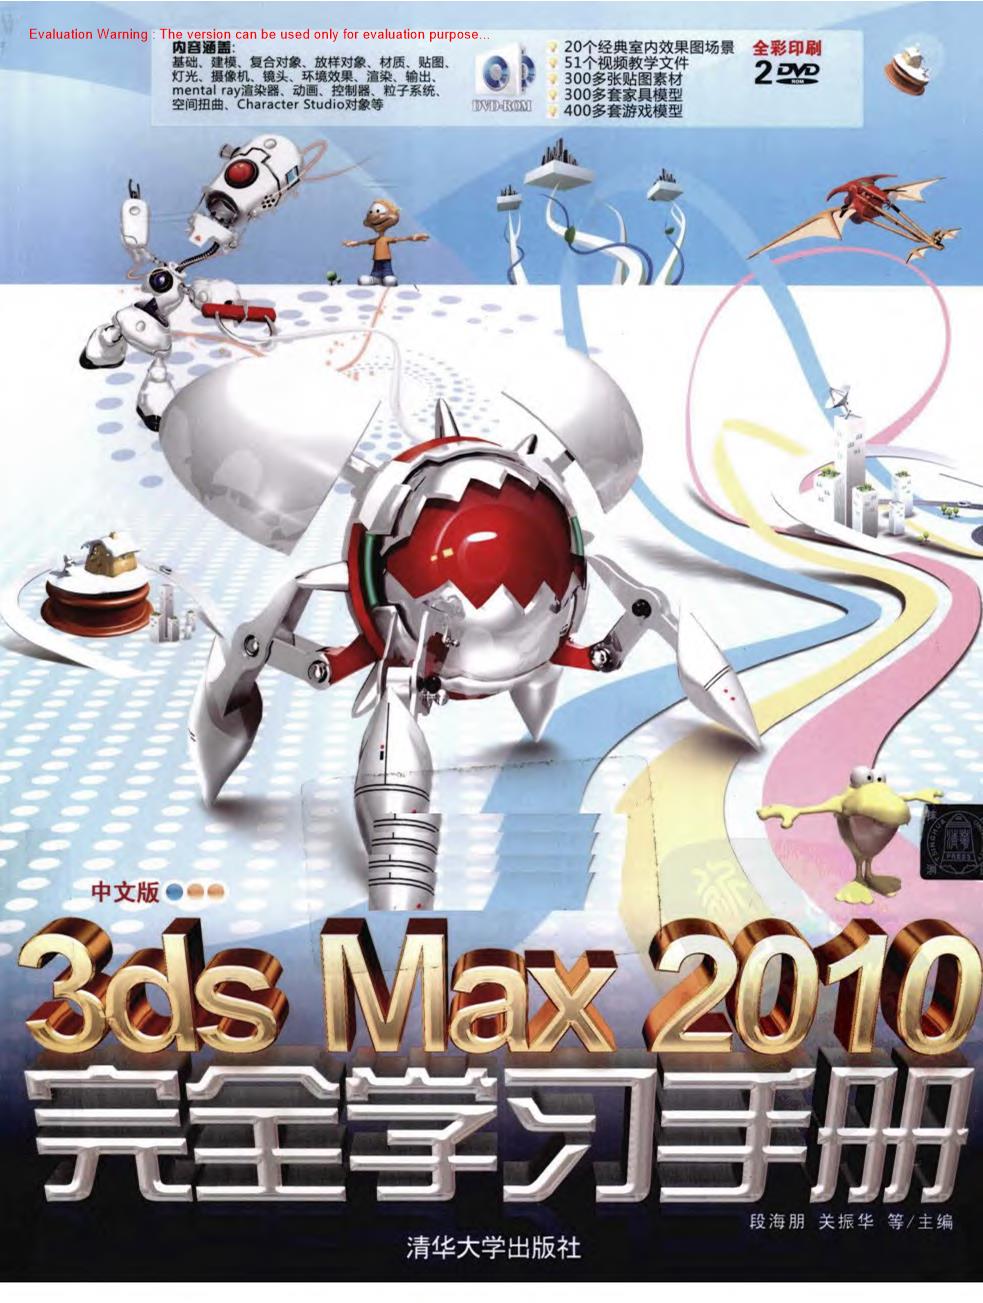 《3ds Max 2010完全学习手册中文版_段海朋等》